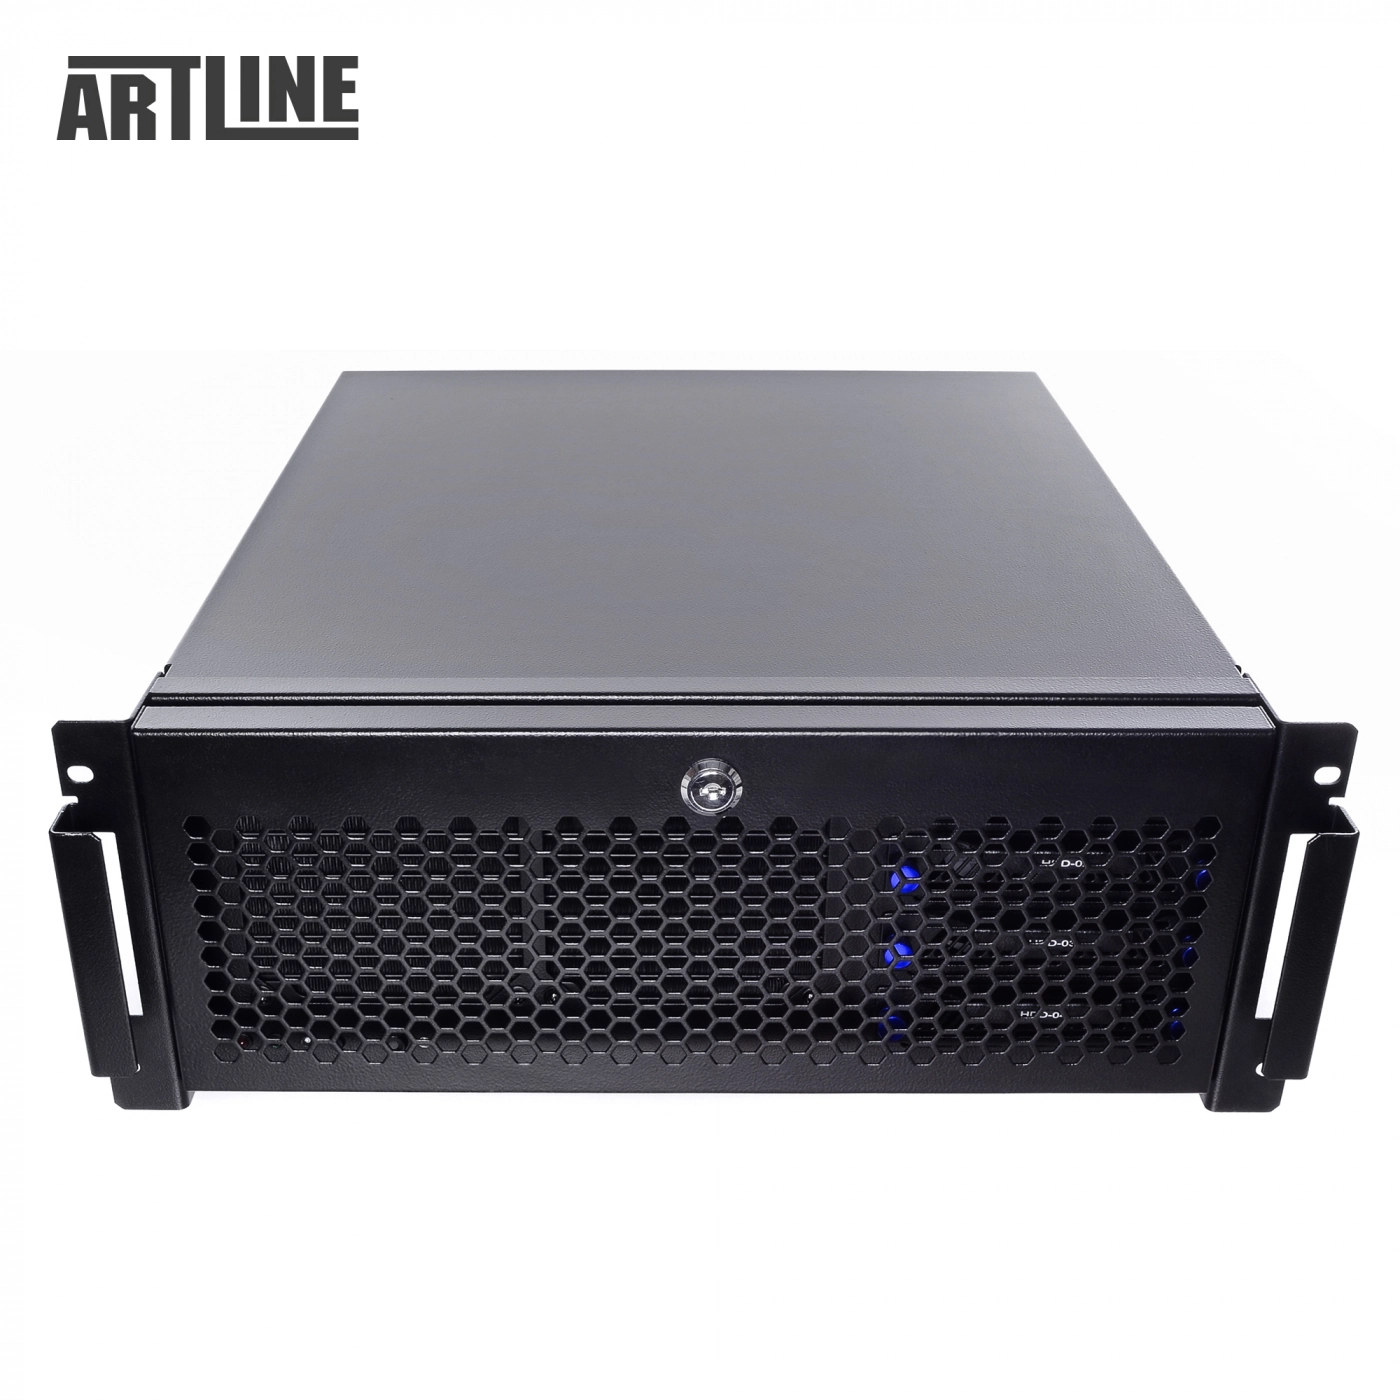 Купить Сервер ARTLINE Business R61v02 - фото 8